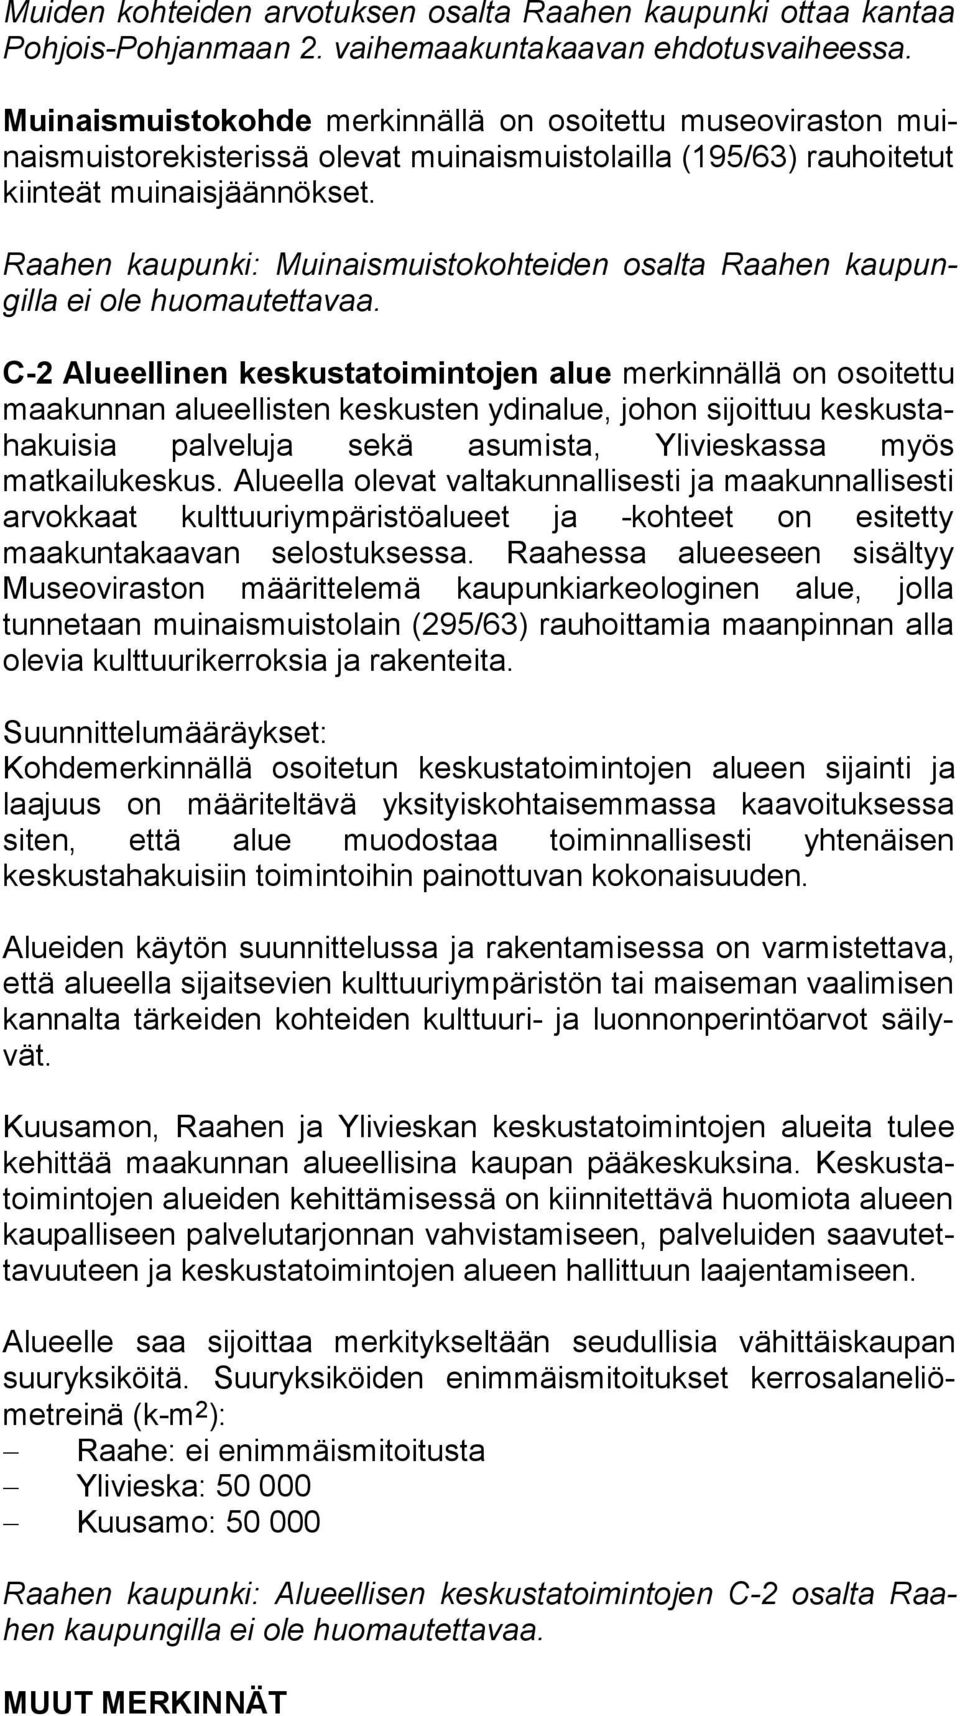 Raahen kaupunki: Muinaismuistokohteiden osalta Raahen kau pungil la ei ole huomautettavaa.